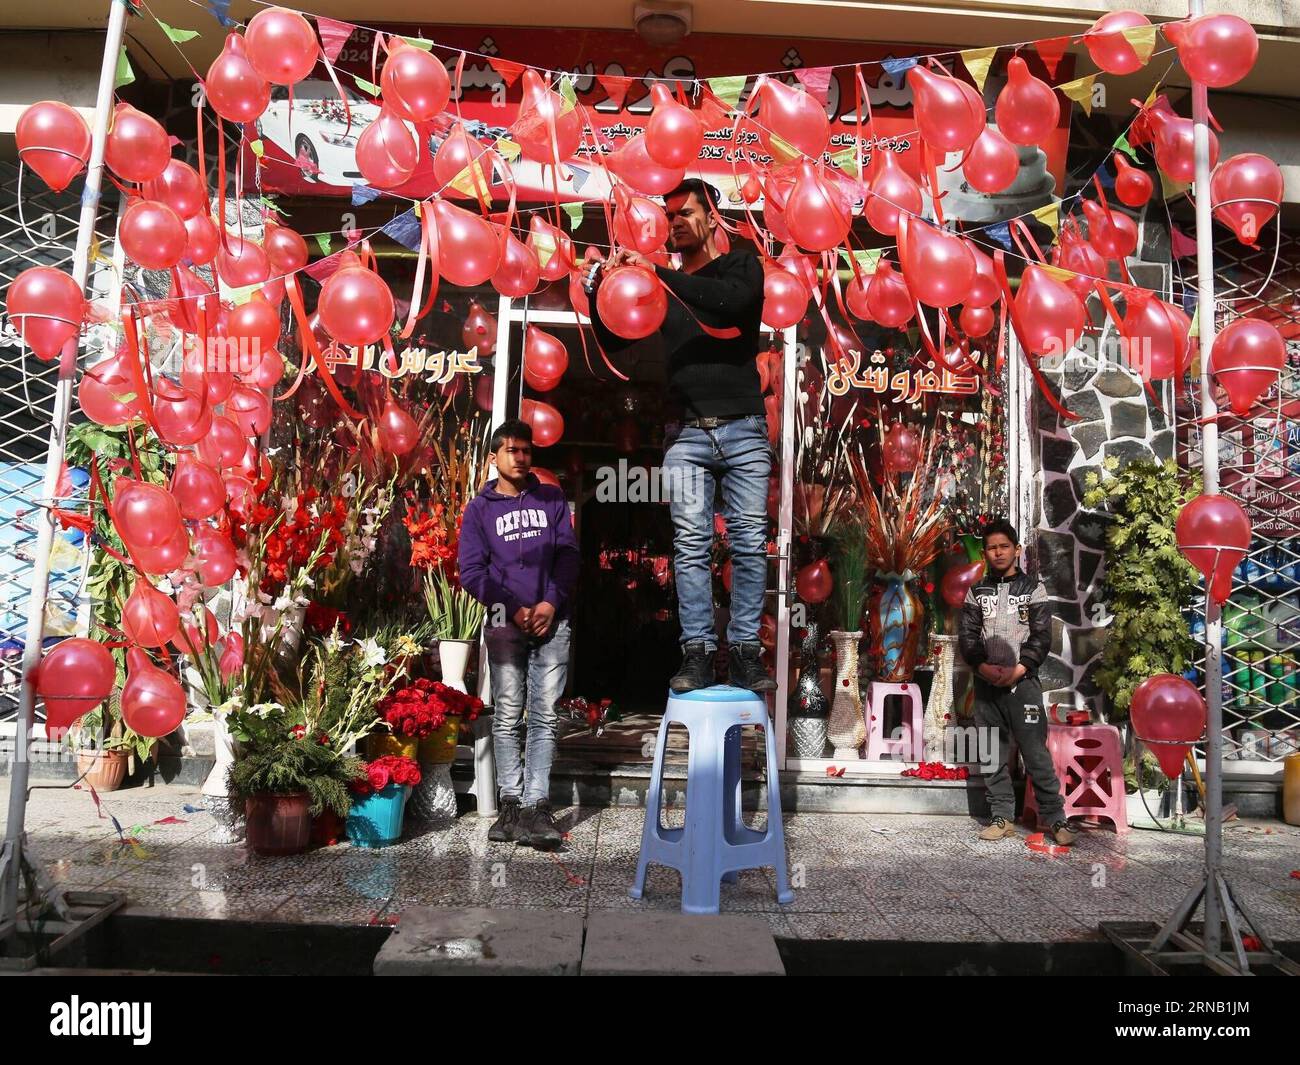 (160214) -- KABUL, 14. Februar 2016 -- ein afghanischer Mann arrangiert Ballons in einem Geschäft am Valentinstag in Kabul, Hauptstadt Afghanistans, 14. Februar 2016. Traditionell sind die meisten Afghanen dem Valentinstag nicht bewusst, aber einige Jugendliche feiern den Tag, indem sie Blumen an ihre Lieben schicken. ) (azp) AFGHANISTAN-KABUL-VALENTINE S DAY RahmatxAlizadah PUBLICATIONxNOTxINxCHN Kabul 14. Februar 2016 To Afghan man arrangiert Ballons in einem Shop AM Valentine S Day in Kabul Hauptstadt von Afghanistan 14. Februar 2016 traditionell kennen die meisten Afghanen den Valentinstag nicht Stockfoto